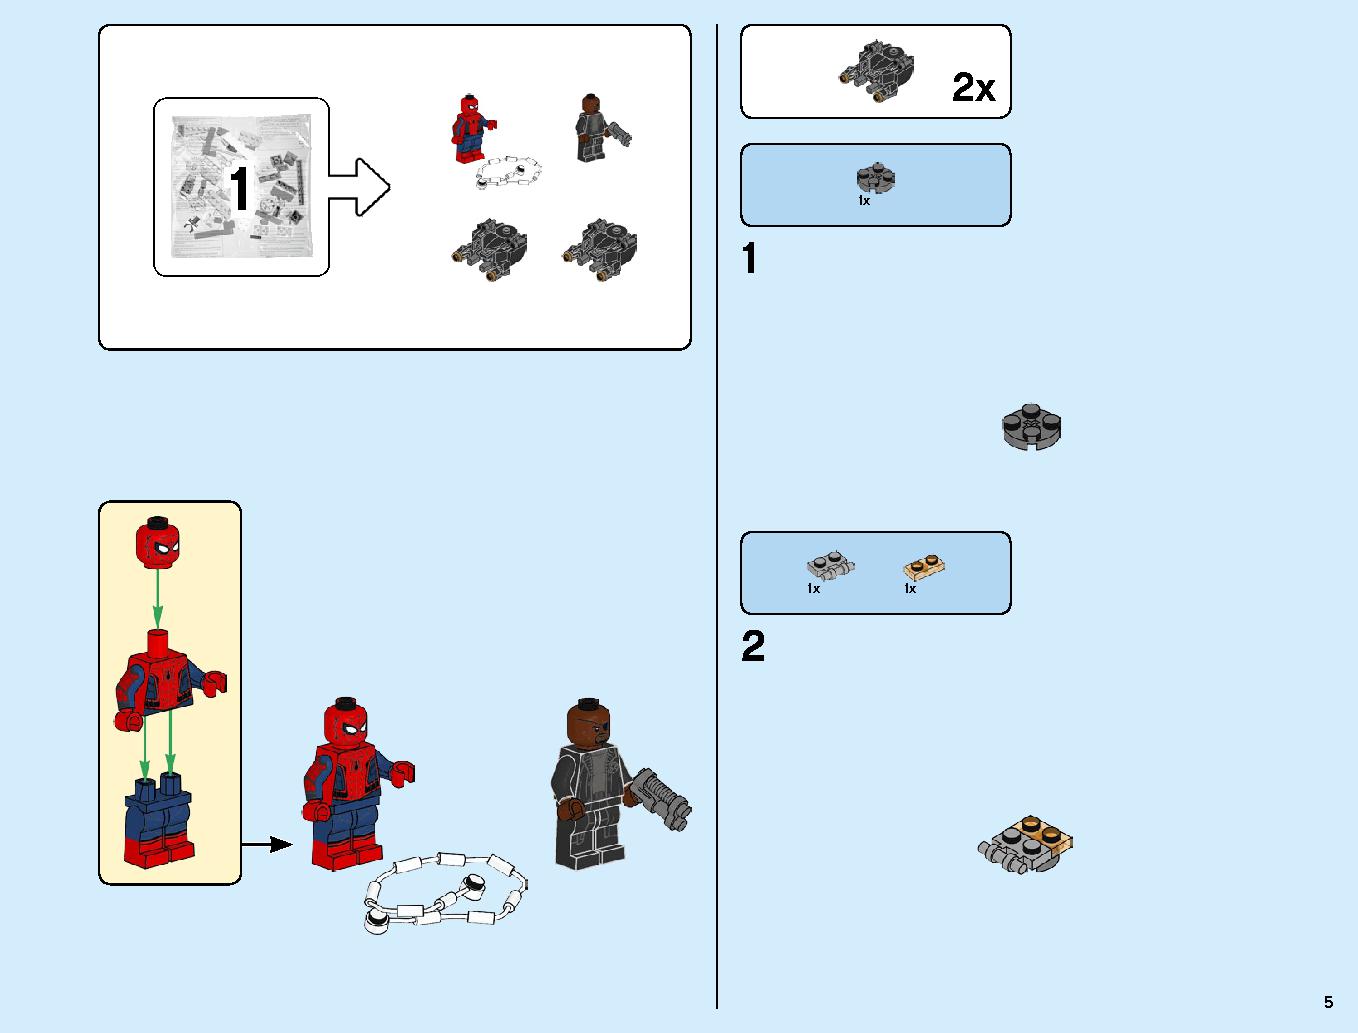 スタークジェットとドローン攻撃 76130 レゴの商品情報 レゴの説明書・組立方法 5 page